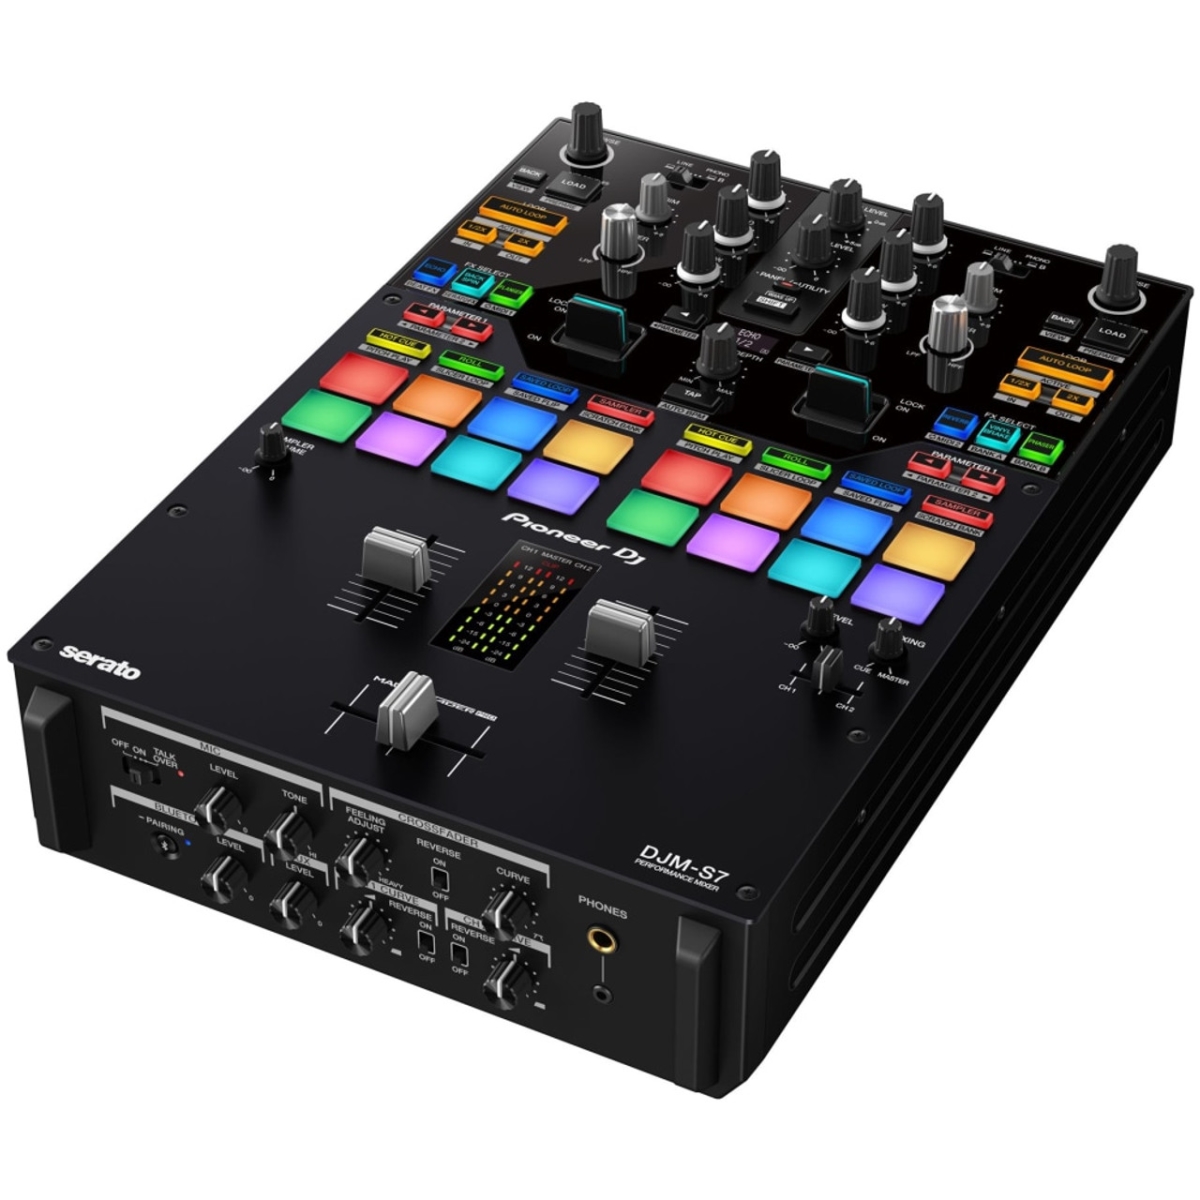 DJMS7 2 Channel Performance Dj Mixer -  Pioneer Pro DJ, DJM-S7